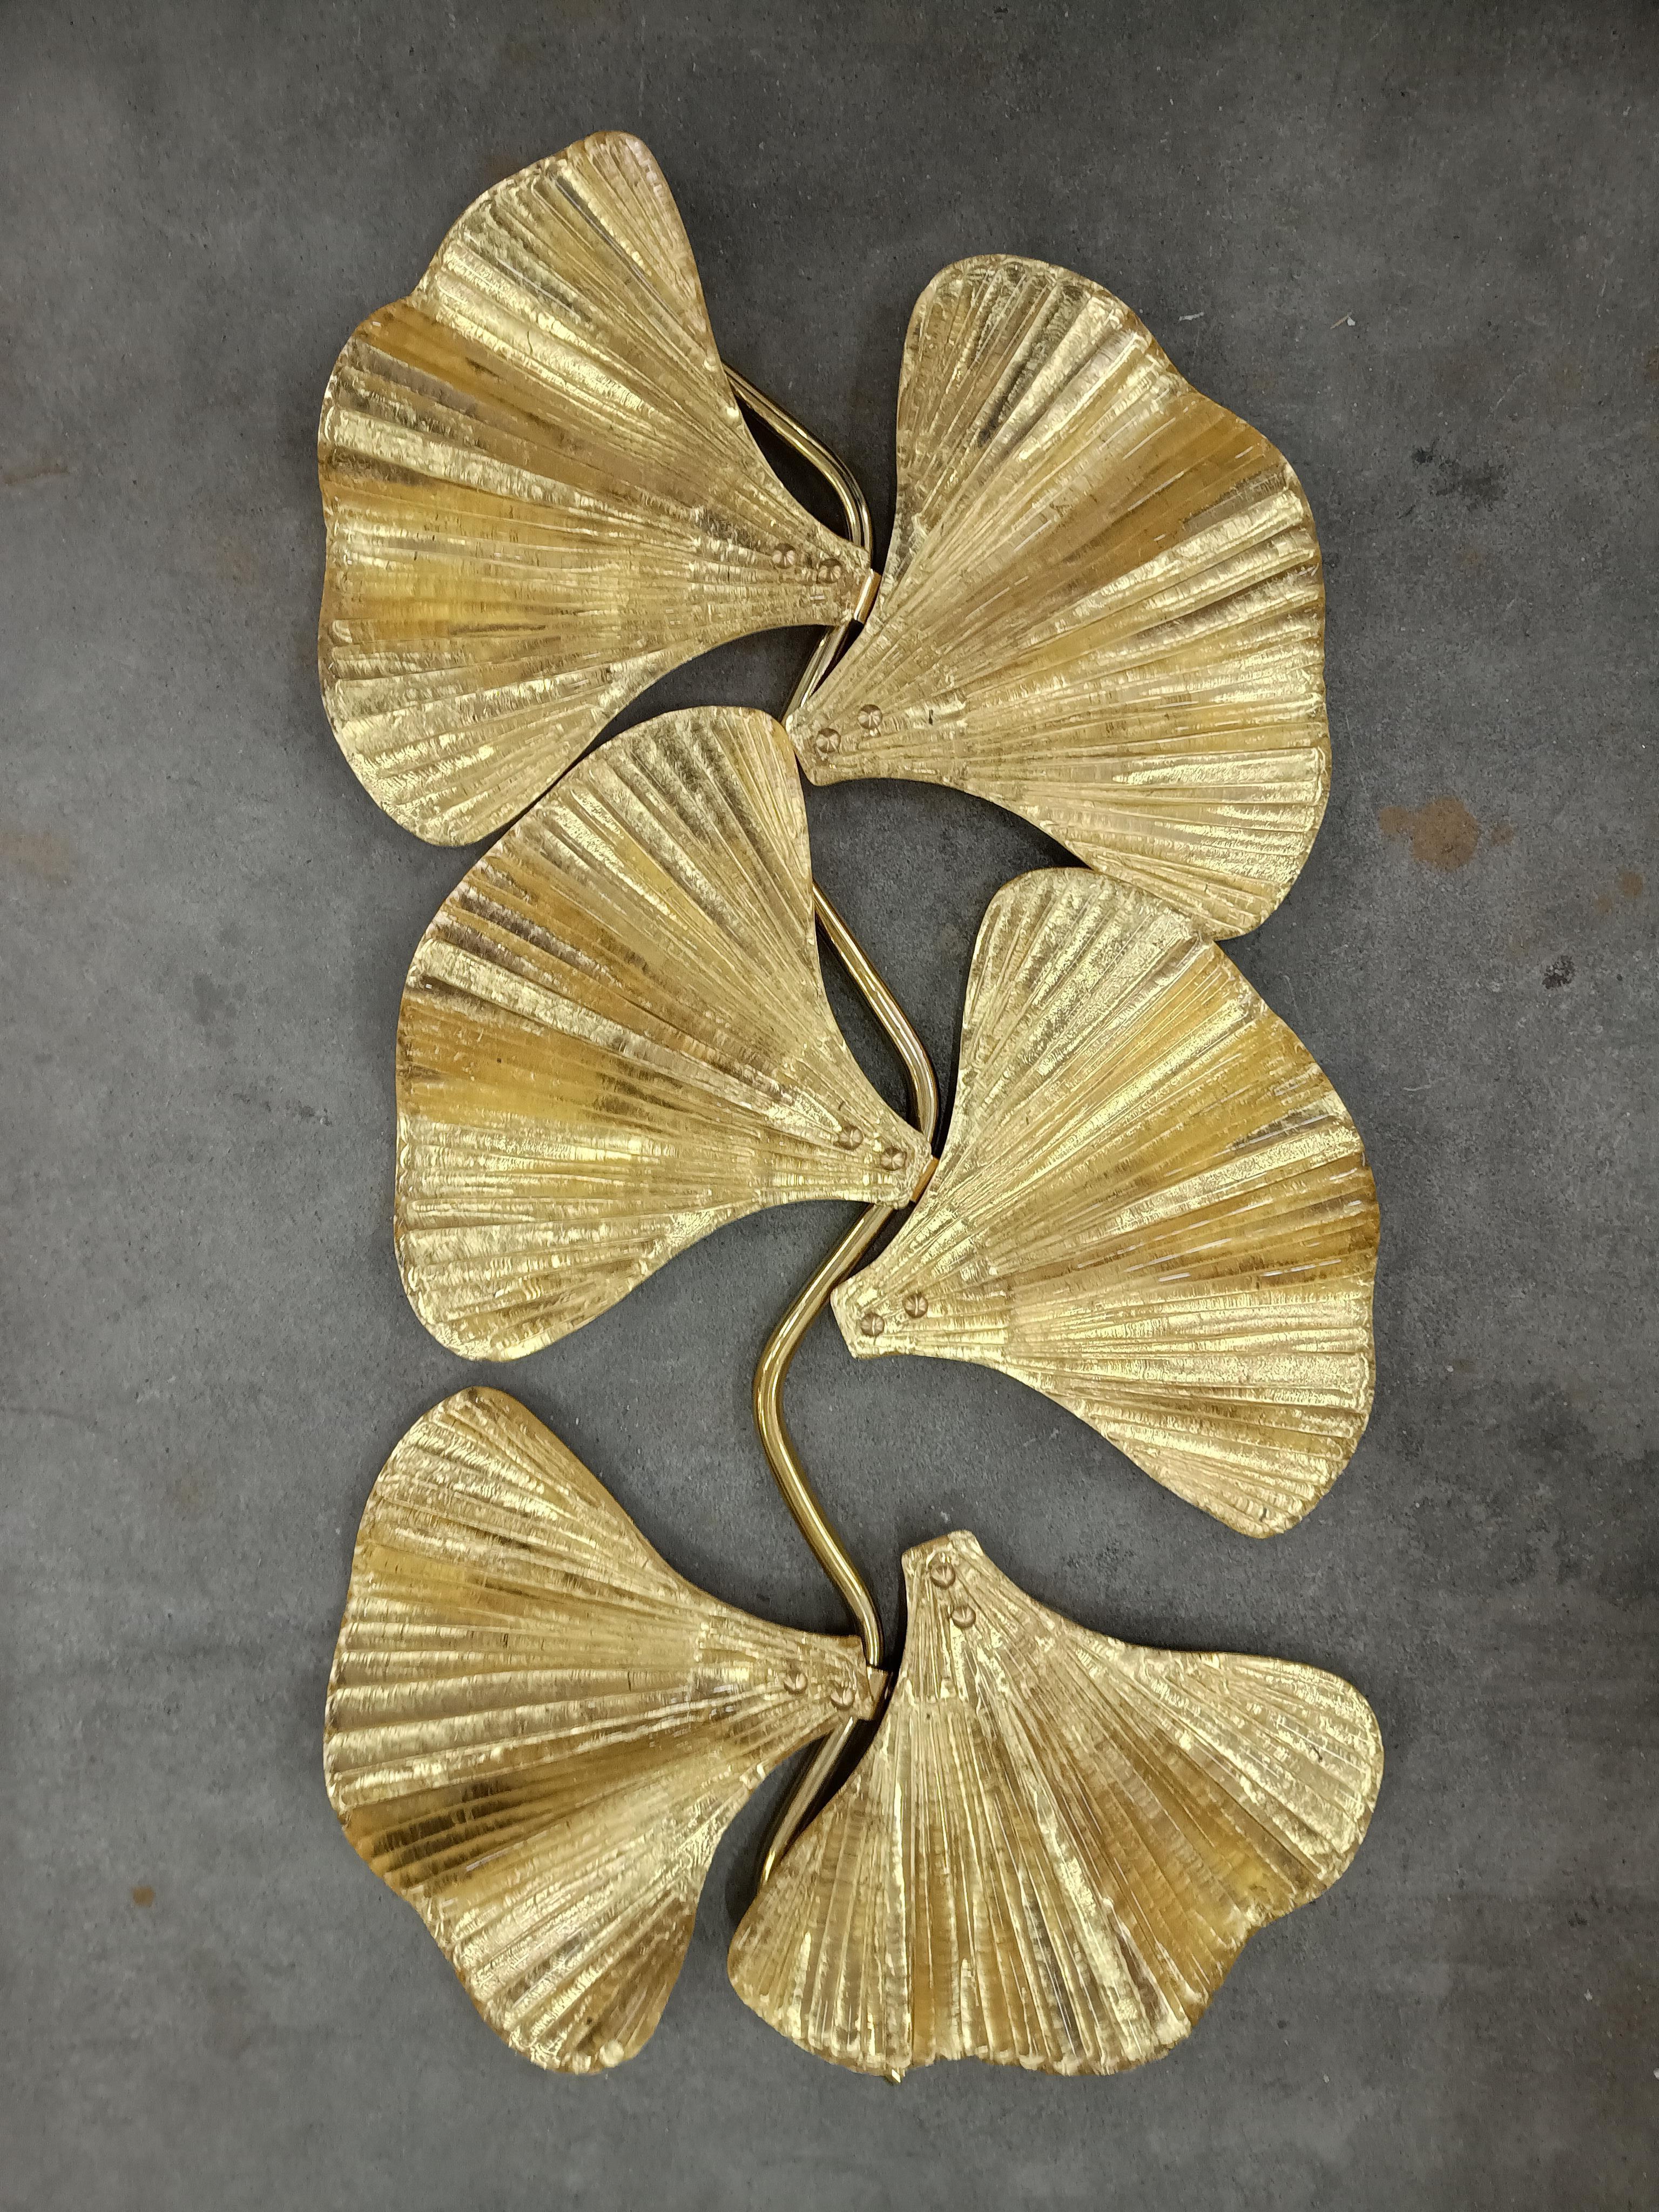 Diese bezaubernde schmale und lange Wandleuchte wurde in Murano vollständig von Hand gefertigt. Jedes einzelne Blatt wird von Hand in Murano aus hochwertigem mundgeblasenem Glas hergestellt, weshalb sich jedes Blatt leicht von dem anderen